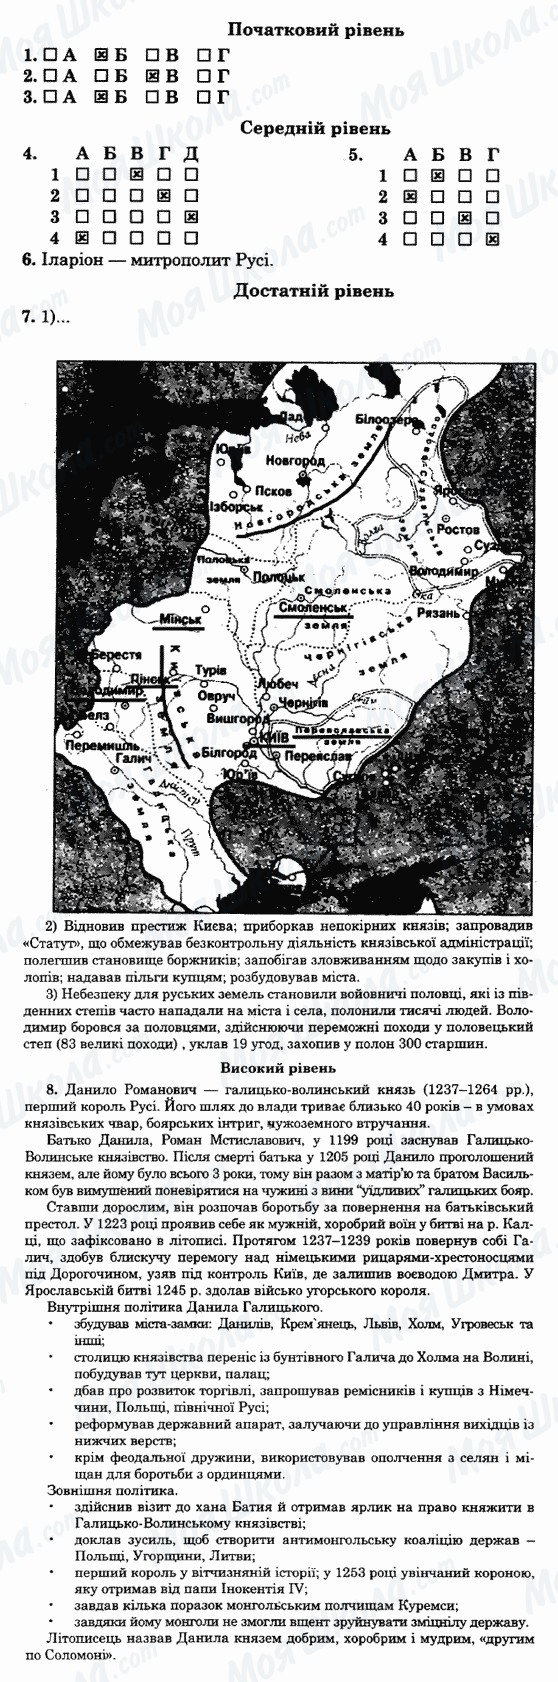 ГДЗ Історія України 7 клас сторінка 11-варіант